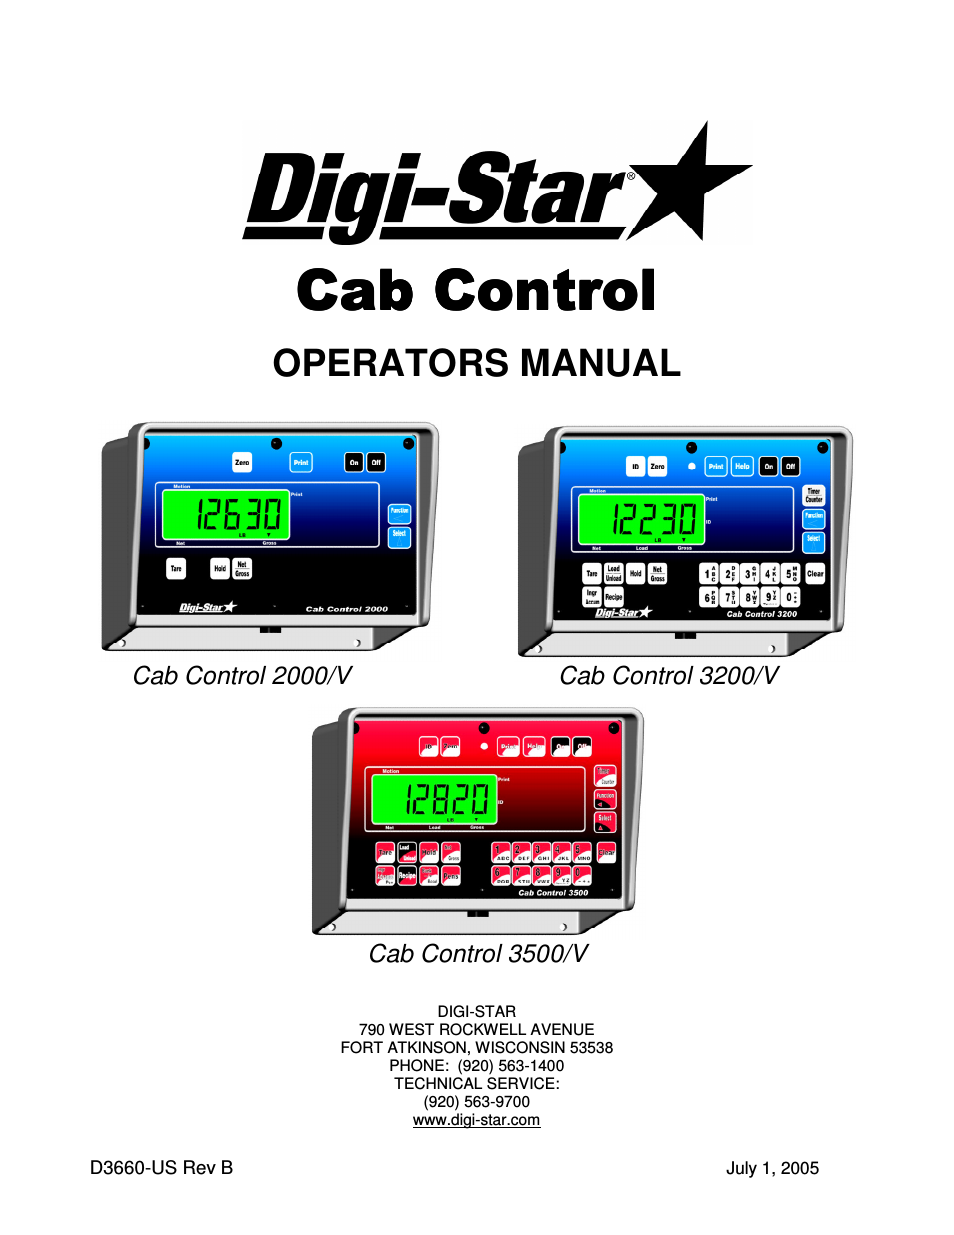 Cab Control 3200/V